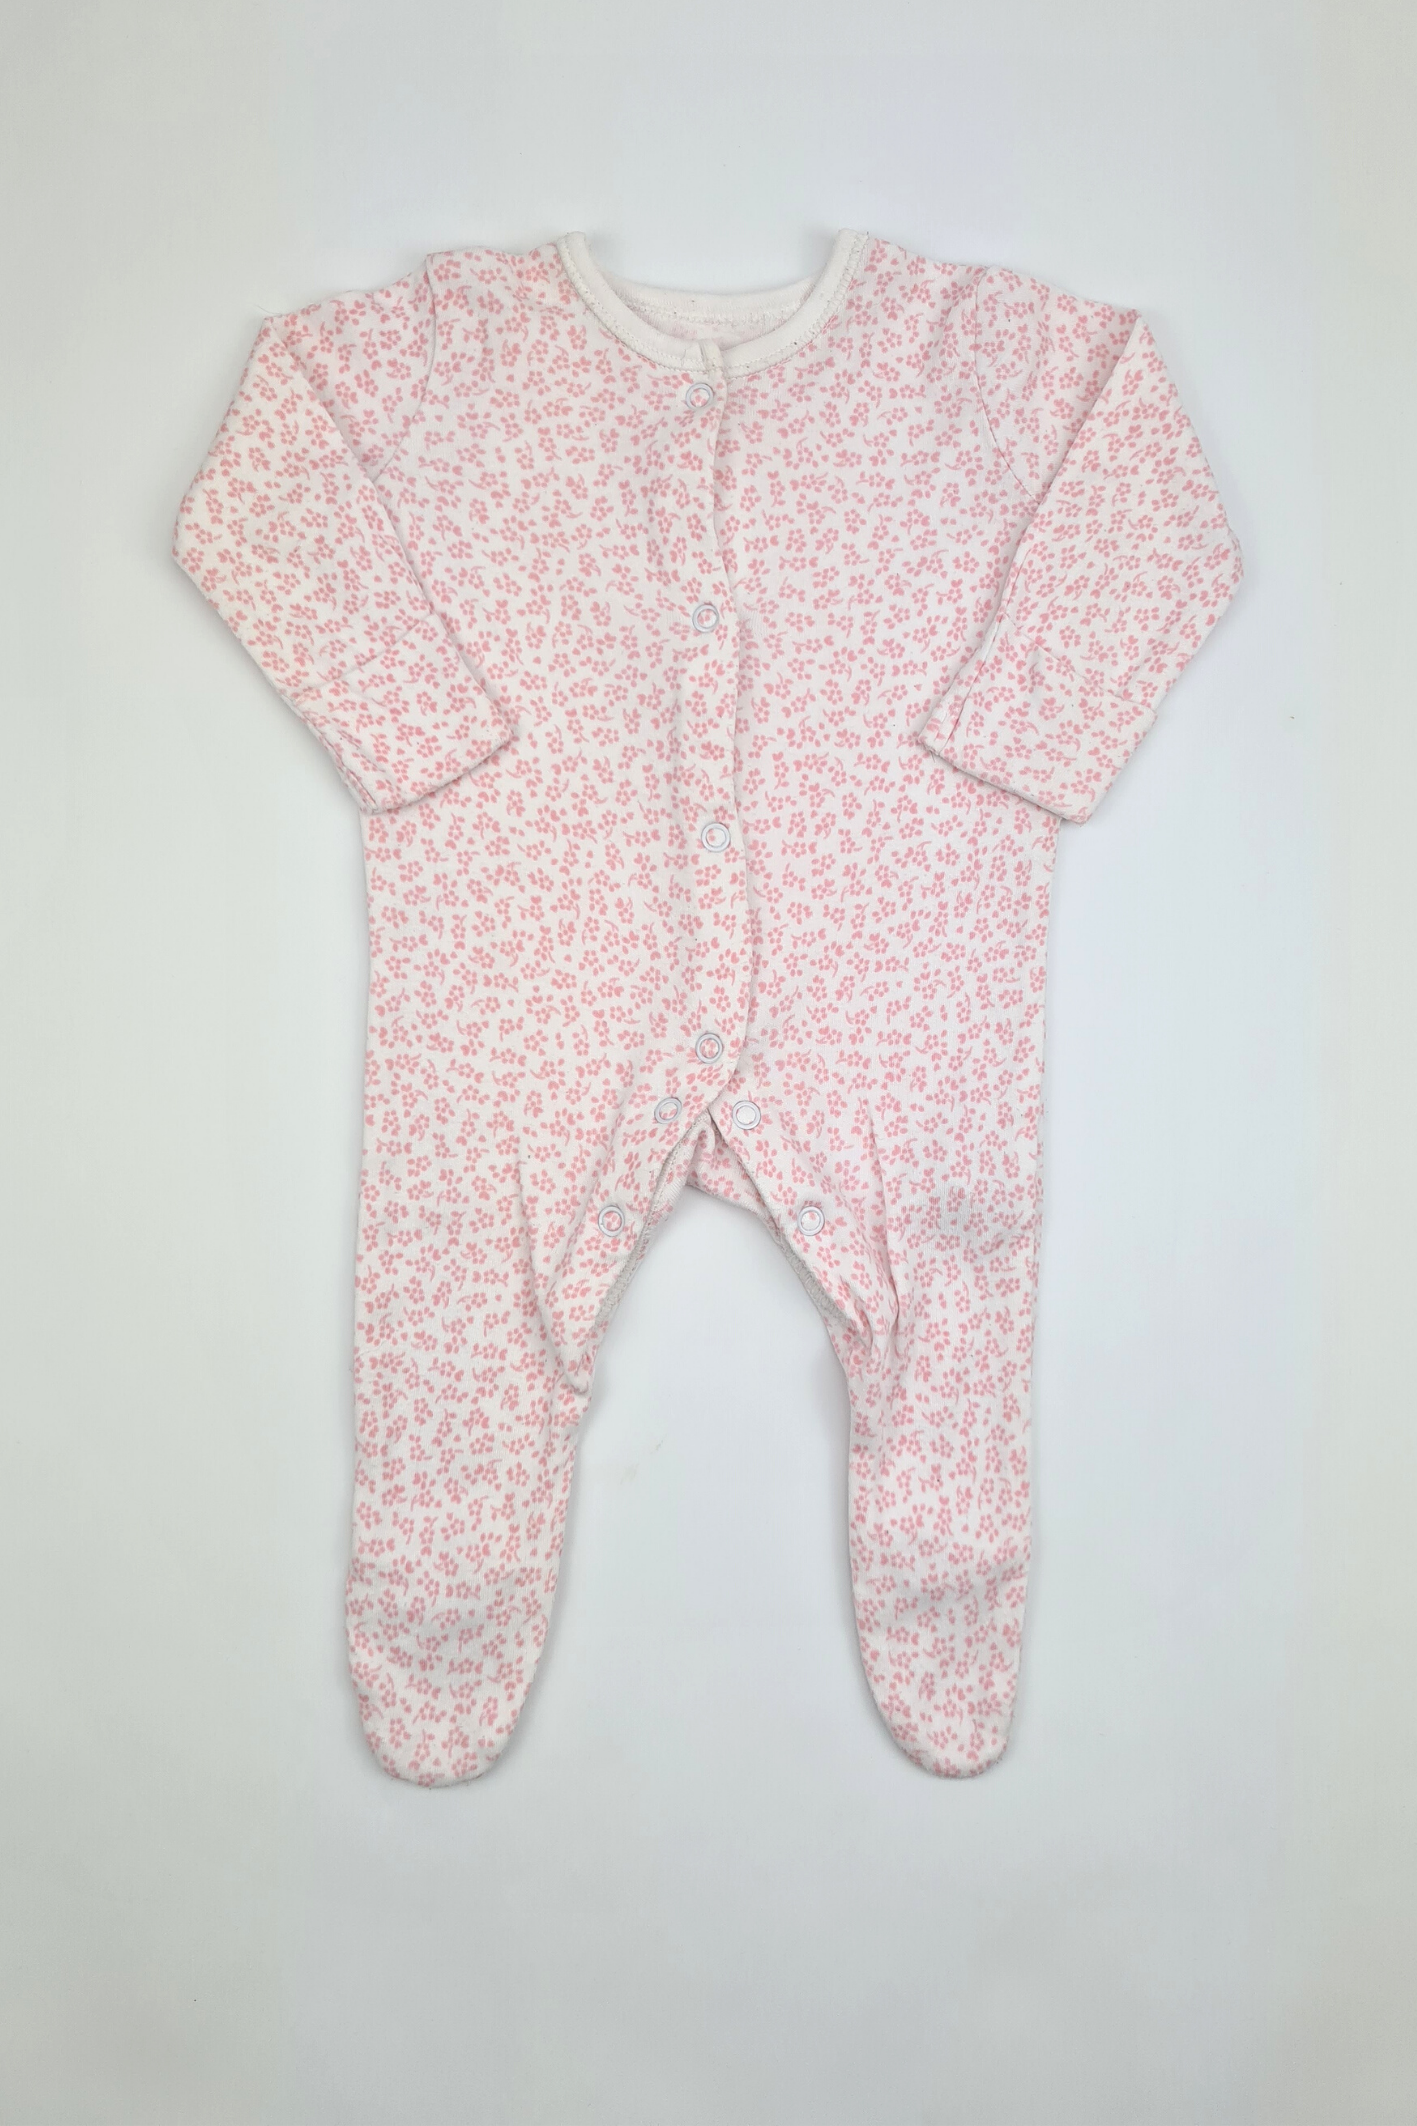 Newborn - 9lbs Pink Floral Print Sleepsuit (George)